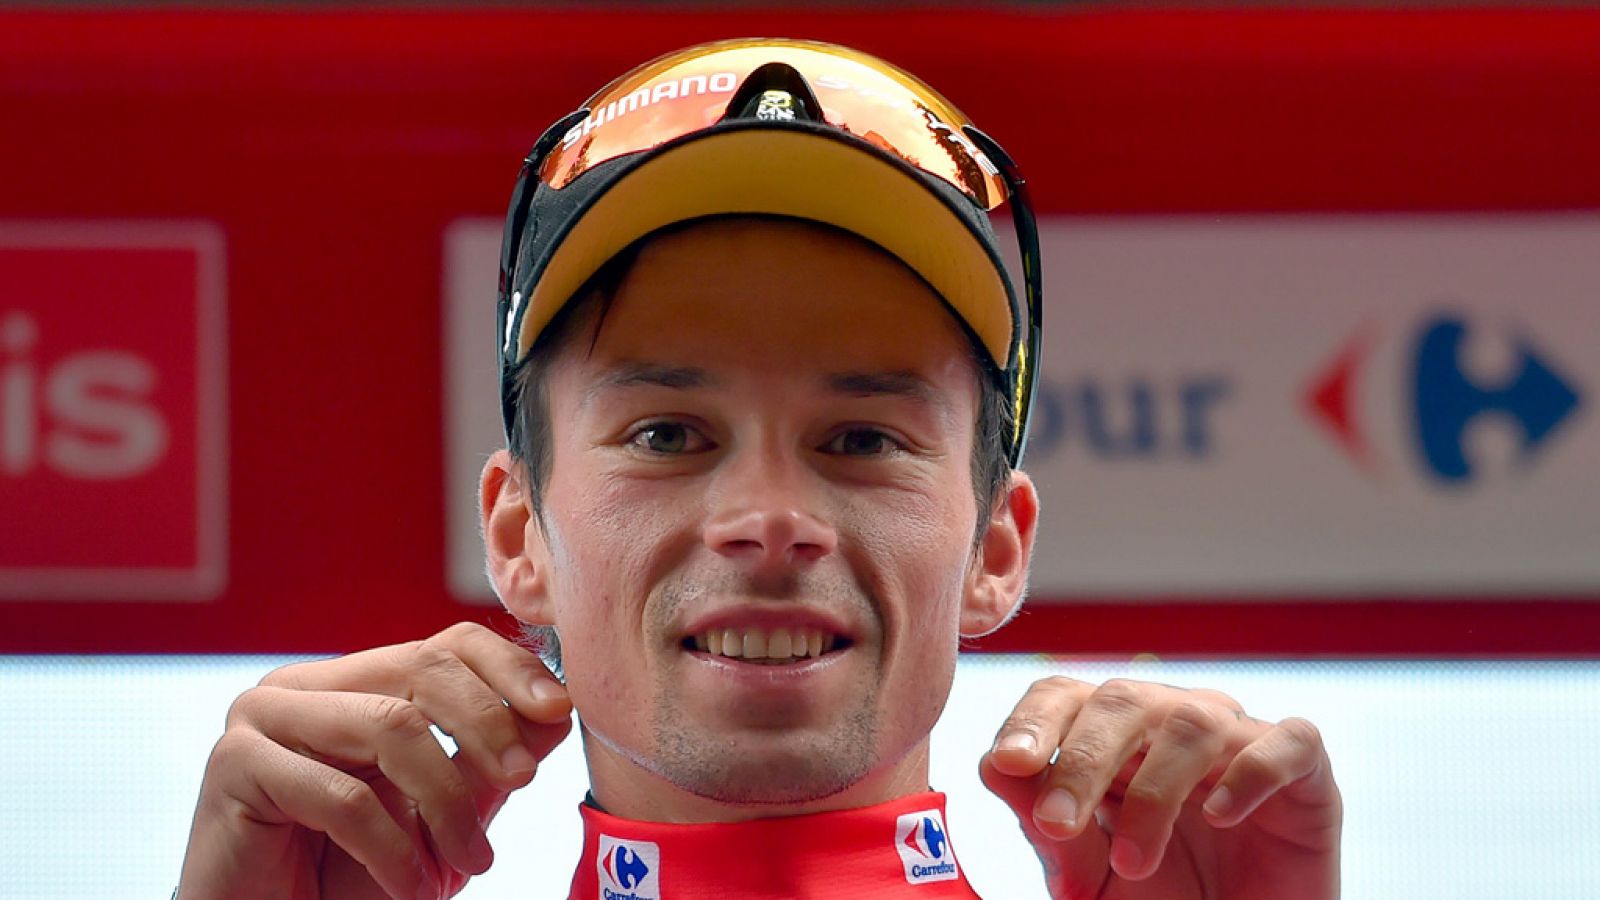 Vuelta a España 2019 | Roglic: "Llevar el maillot rojo es una gran responsabilidad"